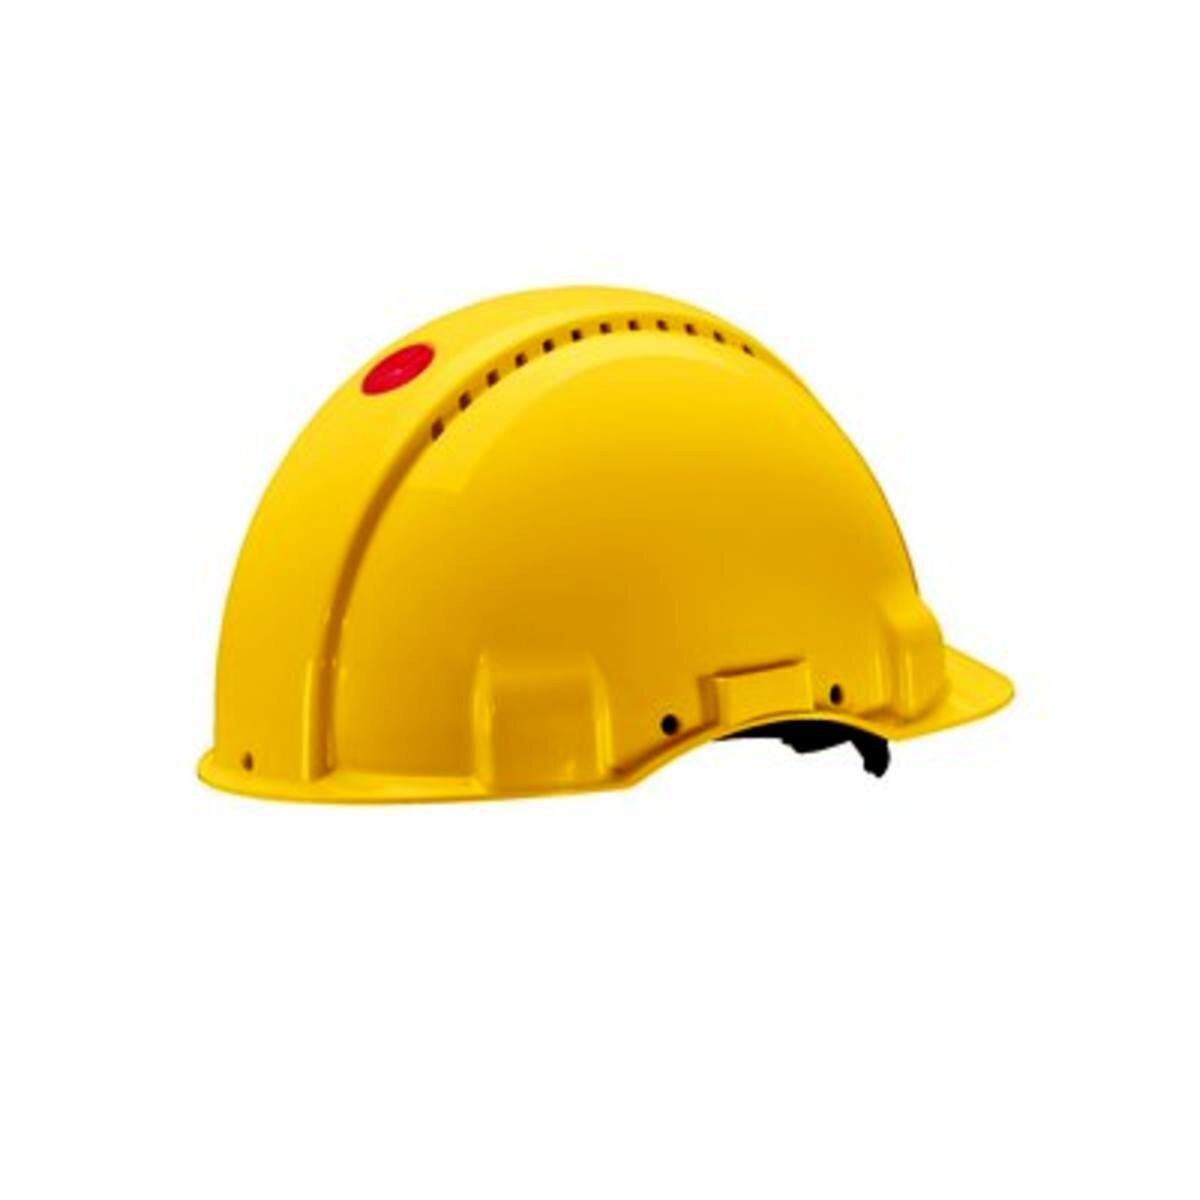 elmetto di sicurezza 3M G3000 G30CUY di colore giallo, ventilato, con uvicatore, pinlock e fascia antisudore in plastica